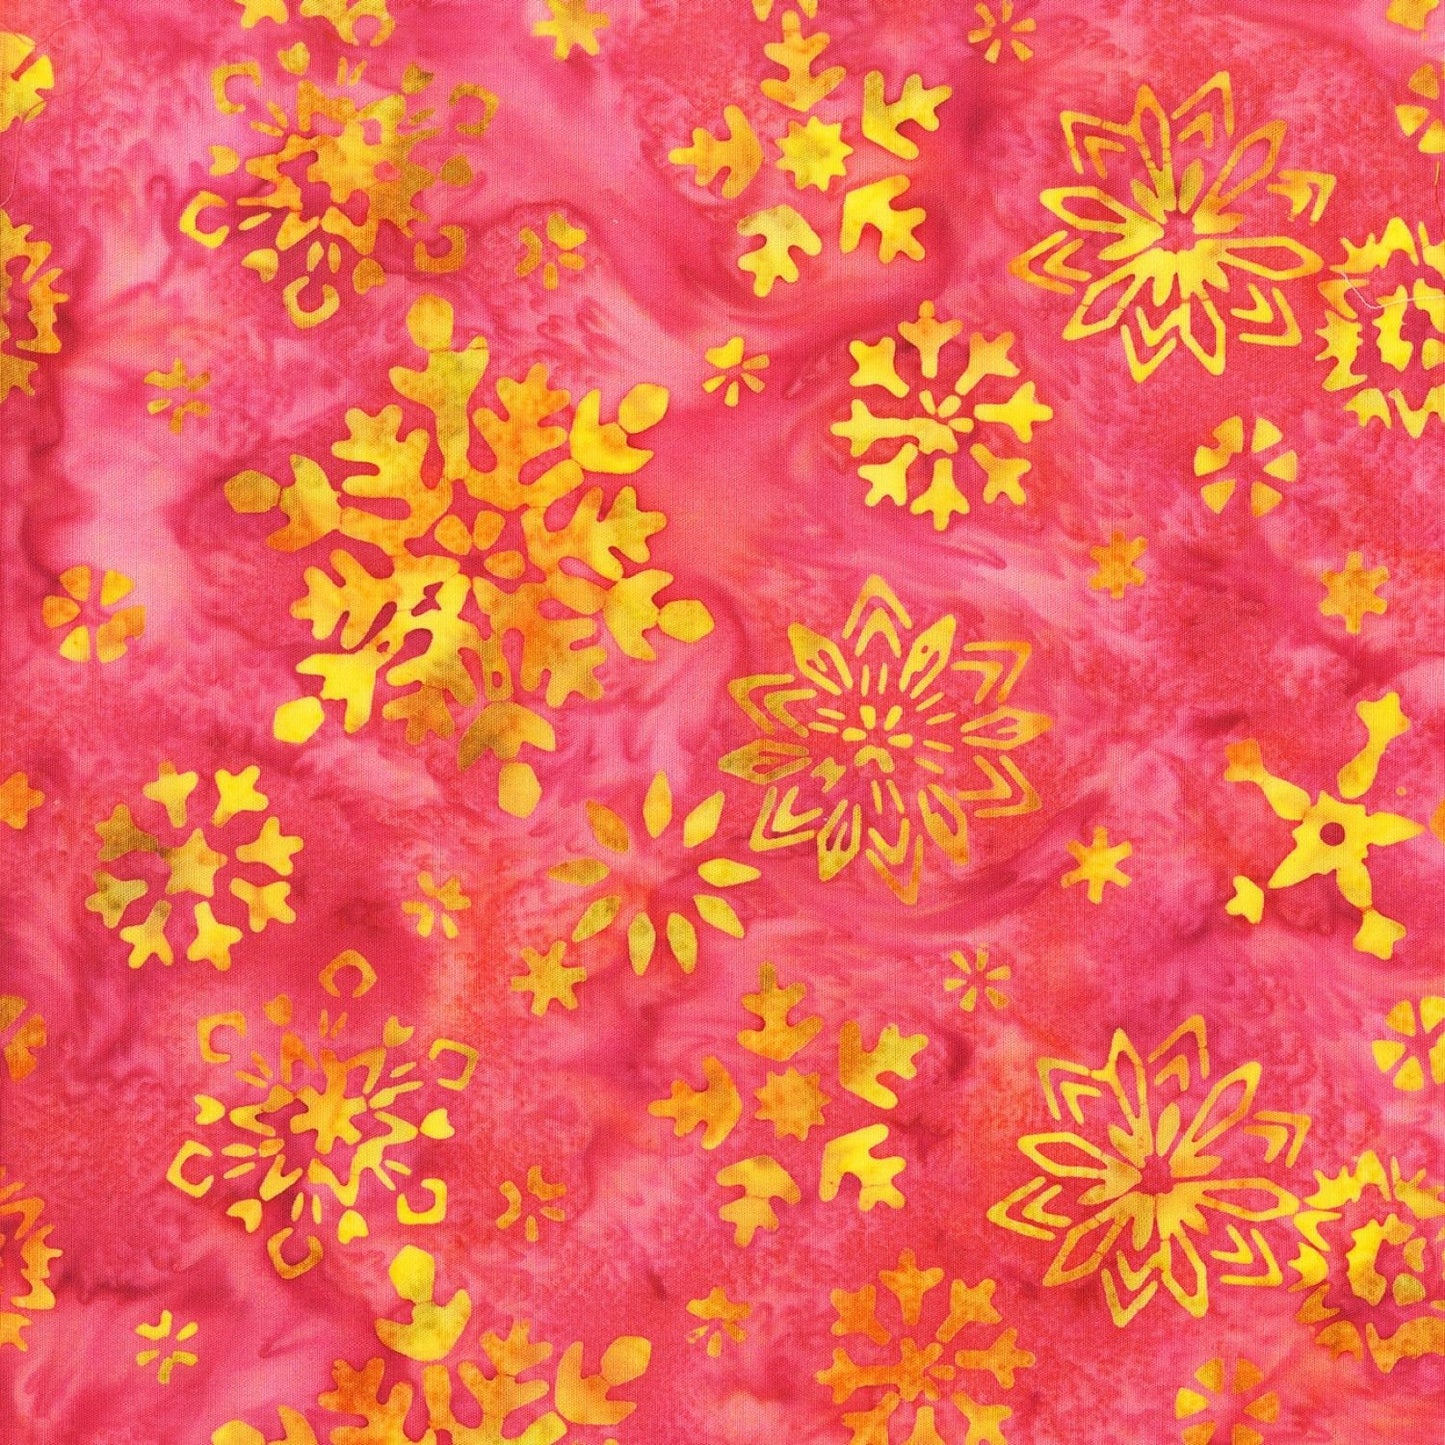 Fairy Dance Batik by Jacqueline de Jonge Pink Batik 3041Q-X Cotton Woven Fabric